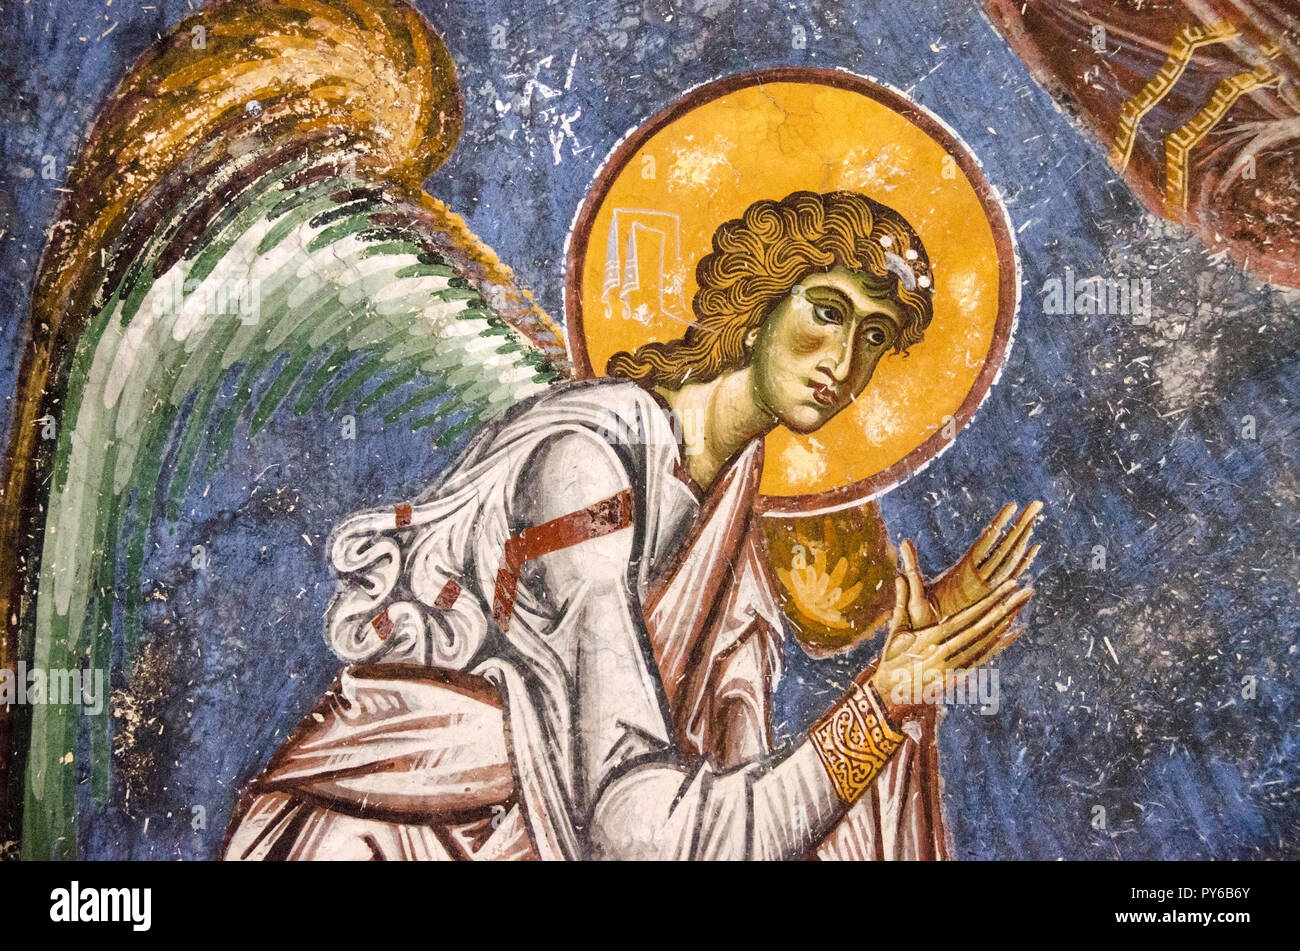 The Angel of Kurbinovo, Macedonia - Church of St. George, Kurbinovo, Prespa region Stock Photo